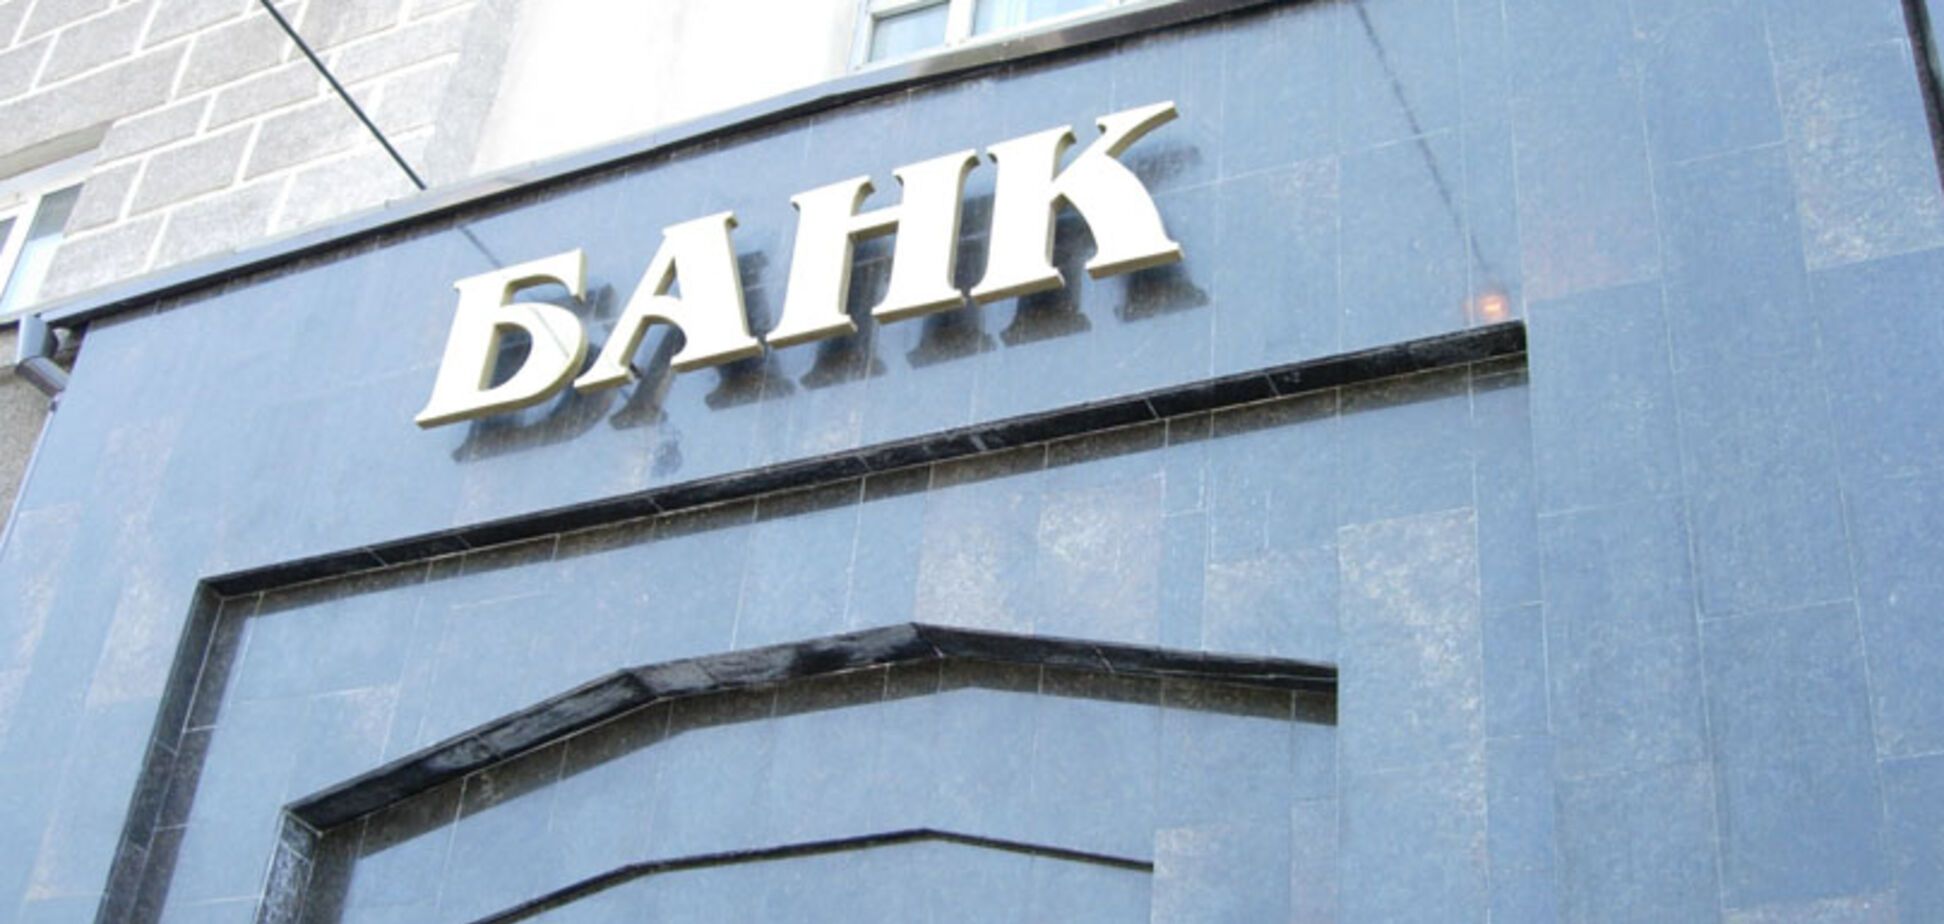 Схема на 300 млн: в Україні розповіли про махінації з відомим банком